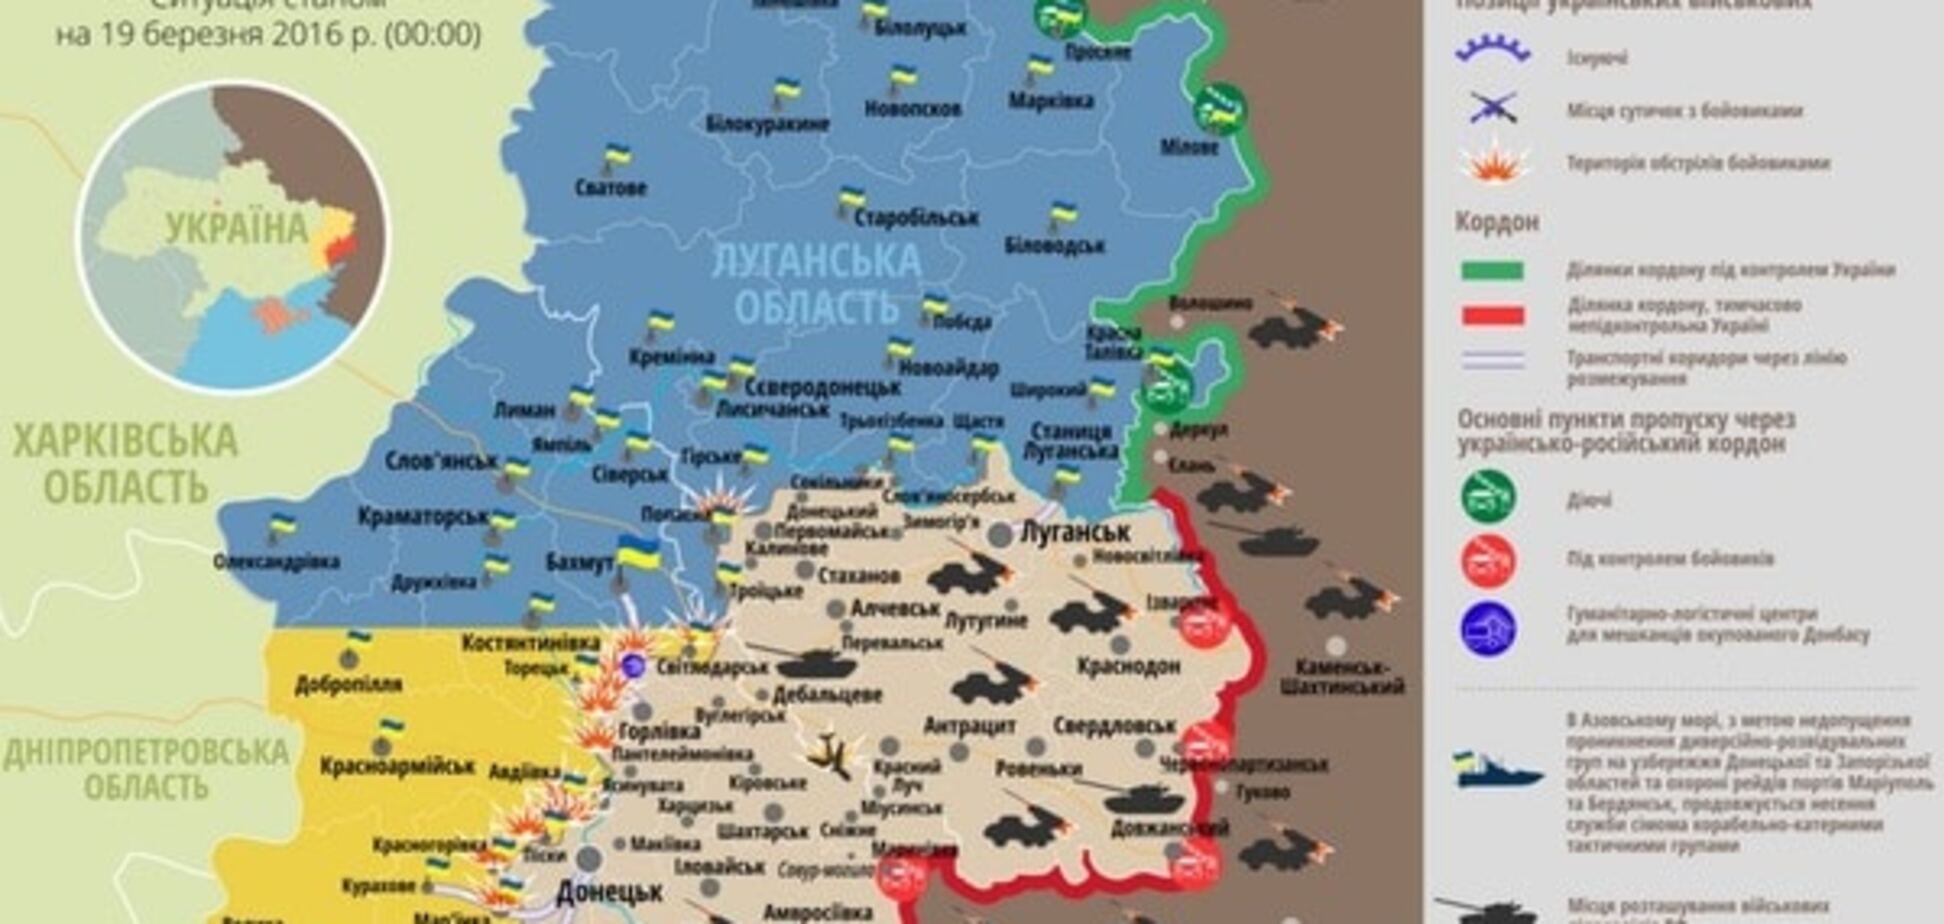 У районі Авдіївки ліквідували більше десяти терористів: карта АТО